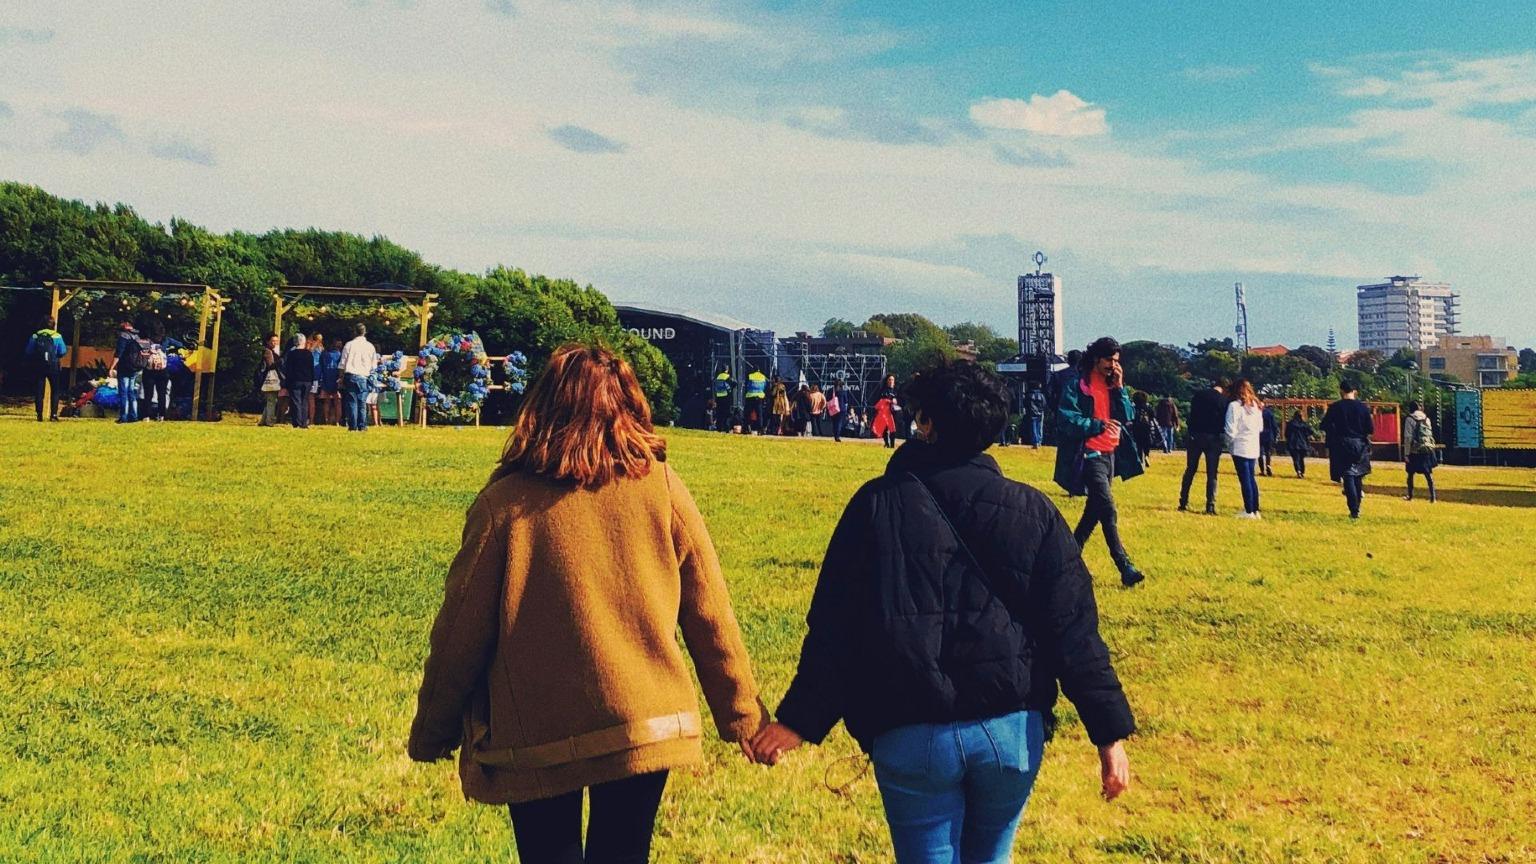 Los asistentes al festival pasean por los campos cubiertos de hierba del Primavera Sound de Oporto durante el día, disfrutando del ambiente relajado y explorando diversas atracciones.